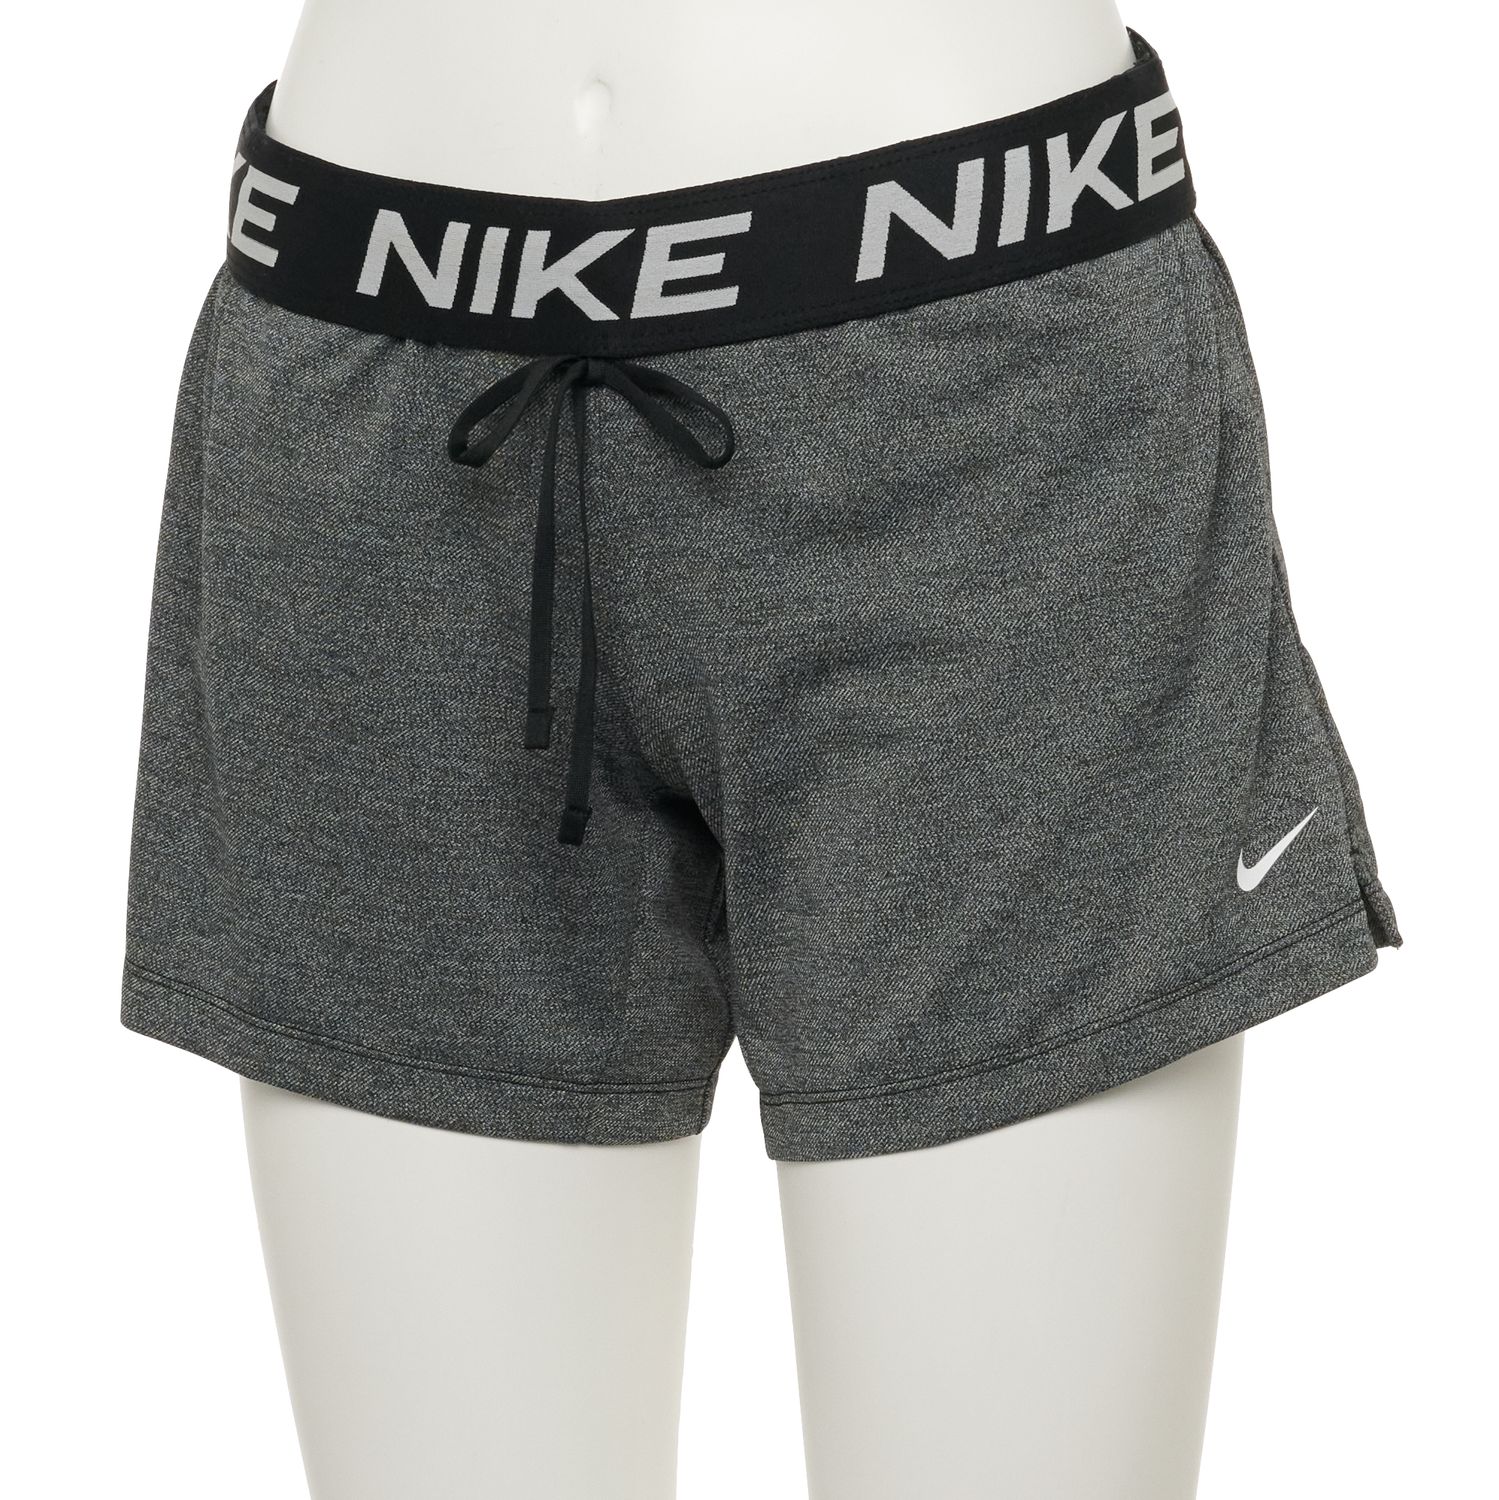 nike pro women's shorts kohls